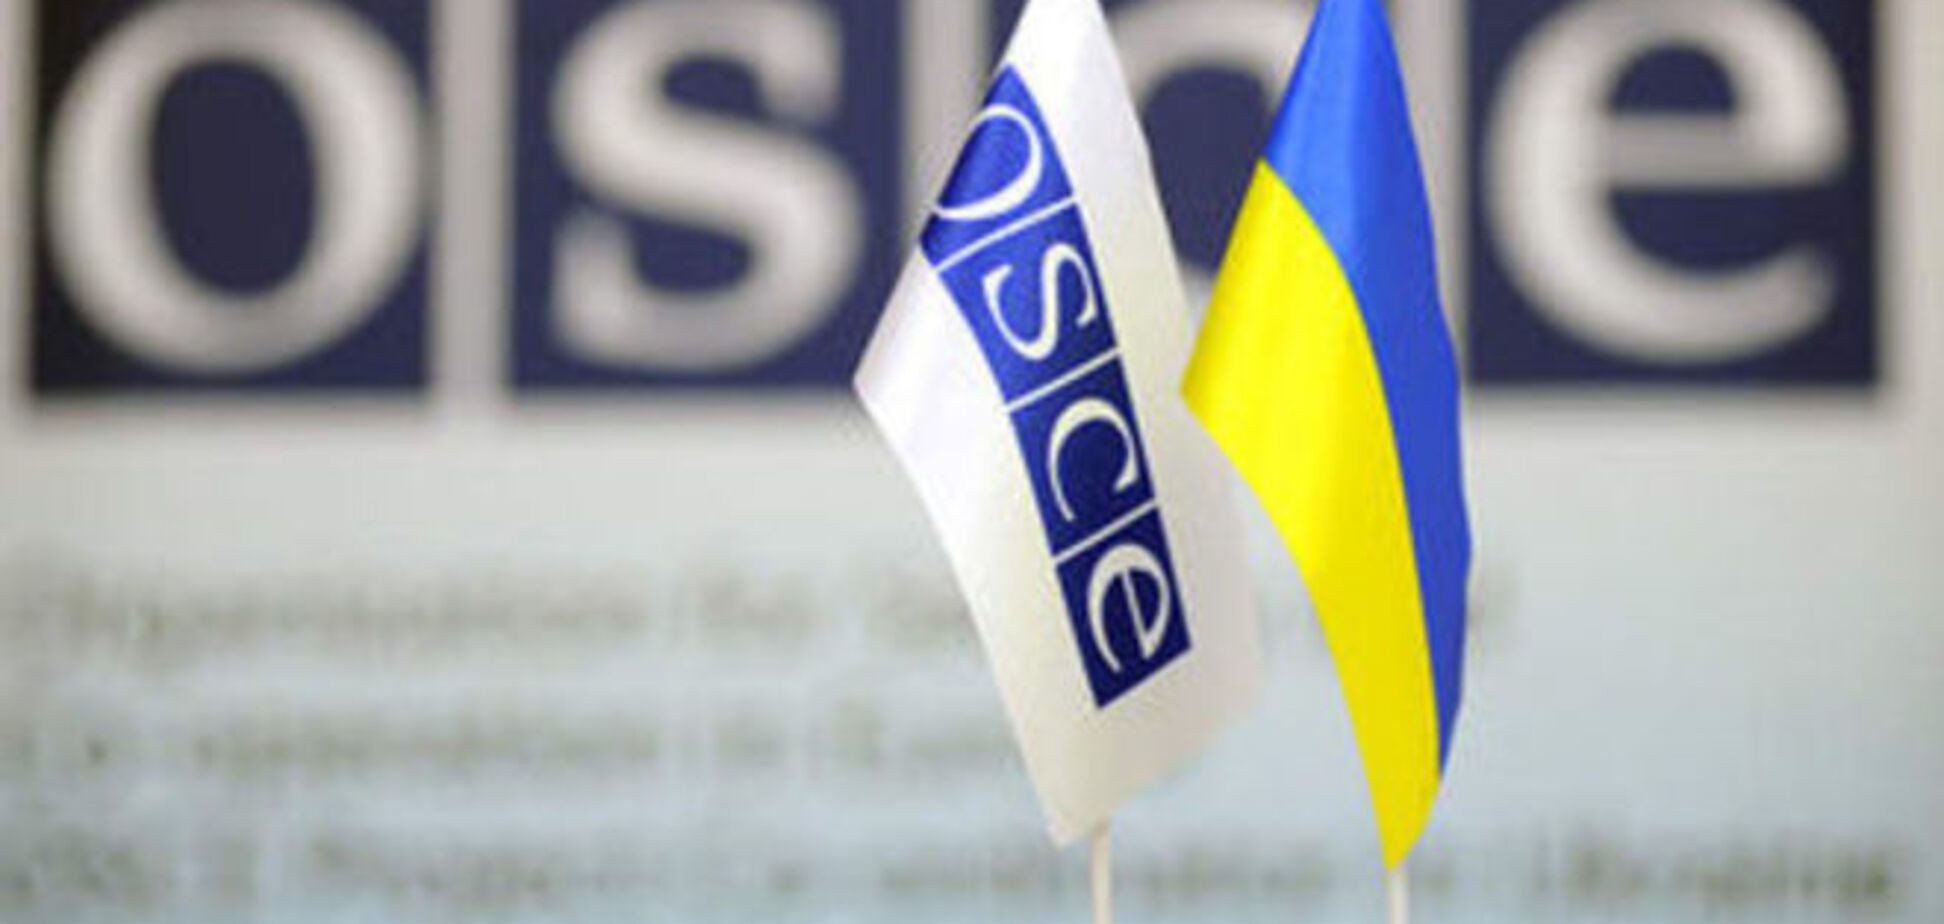 США требуют от России доступа в Крым для миссии ОБСЕ